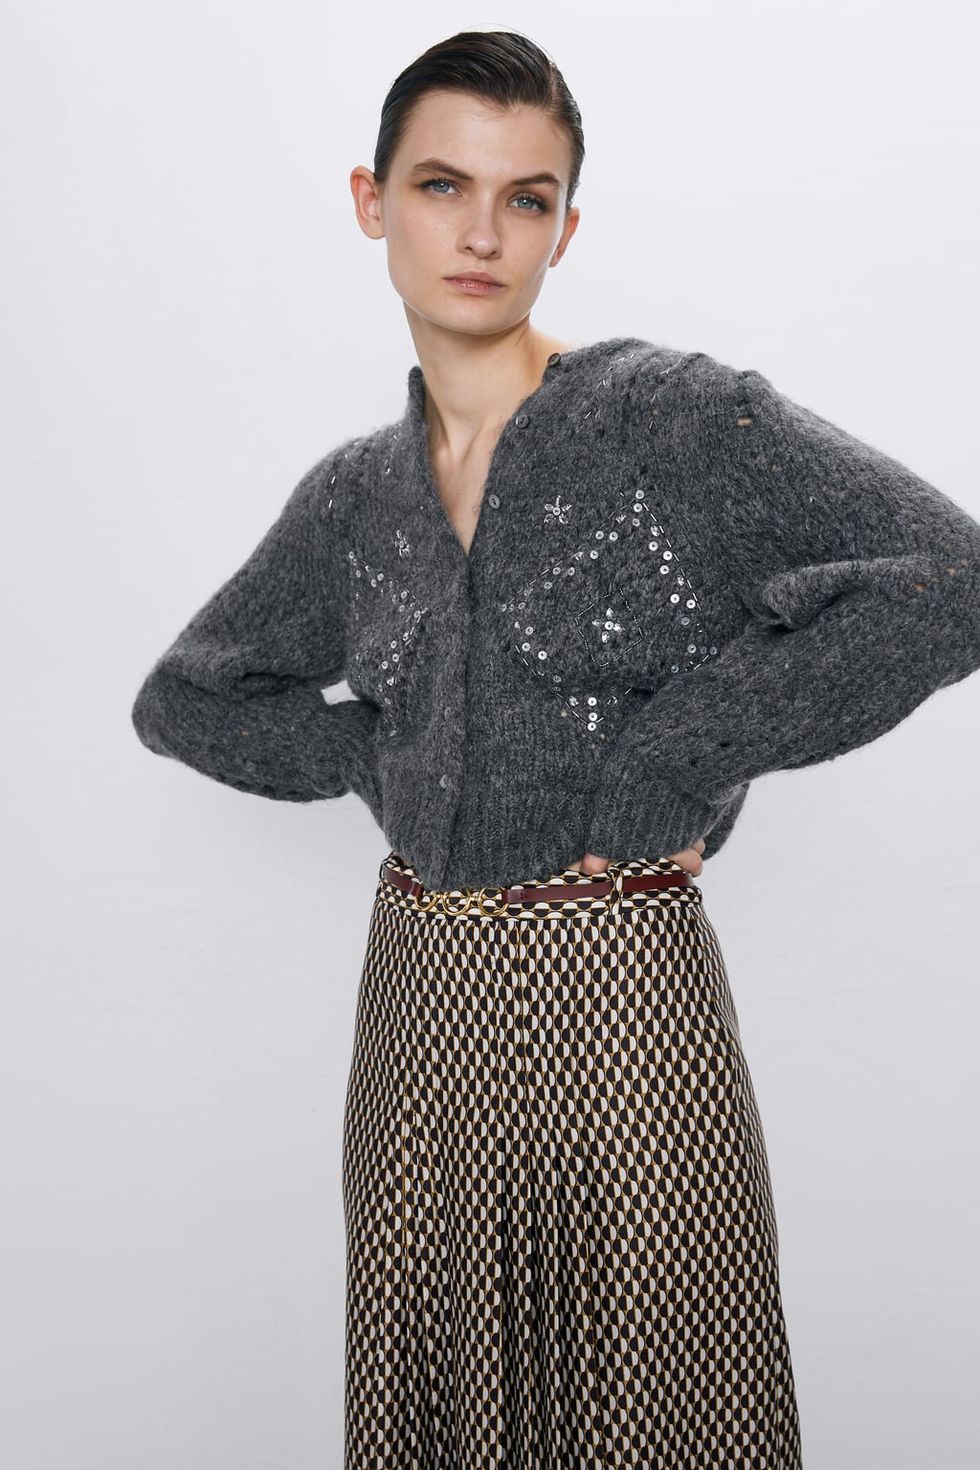 agujero que te diviertas exhaustivo En Zara han diseñado una chaqueta de punto que es una joya